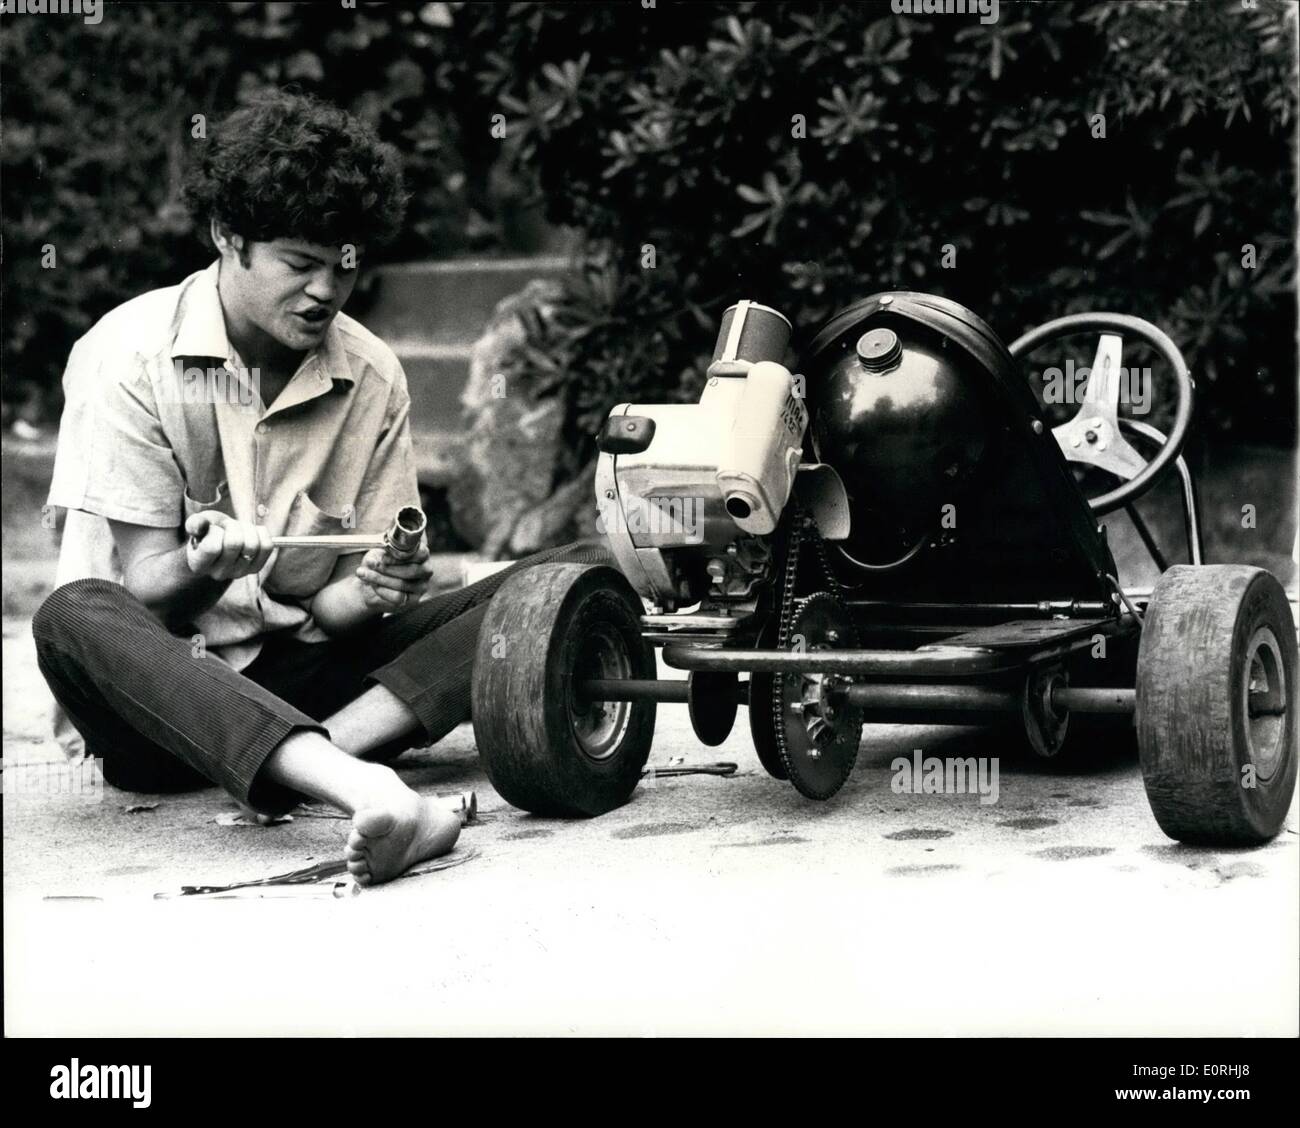 Sett. 09, 1959 - Hi-Speed Monkee: Monkee Micky Dolenz ha recentemente si trovò una nuova emozionante hobby-go-kart racing! Ed essendo meccanicamente una mentalità Monkee, Micky ha fatto più di go-kart racing-egli ha effettivamente si costruì un go-kart, nel suo giardino nella sua casa di Los Angeles. E ogni volta che egli non è il giro del mondo con il gruppo micky di godere a fondo se stesso racing il go-kart. Mostra fotografica. Monkee Micky Dolenz mantiene la sua casa costruita di go-kart in tip top condizioni pronto per il racing. Foto Stock